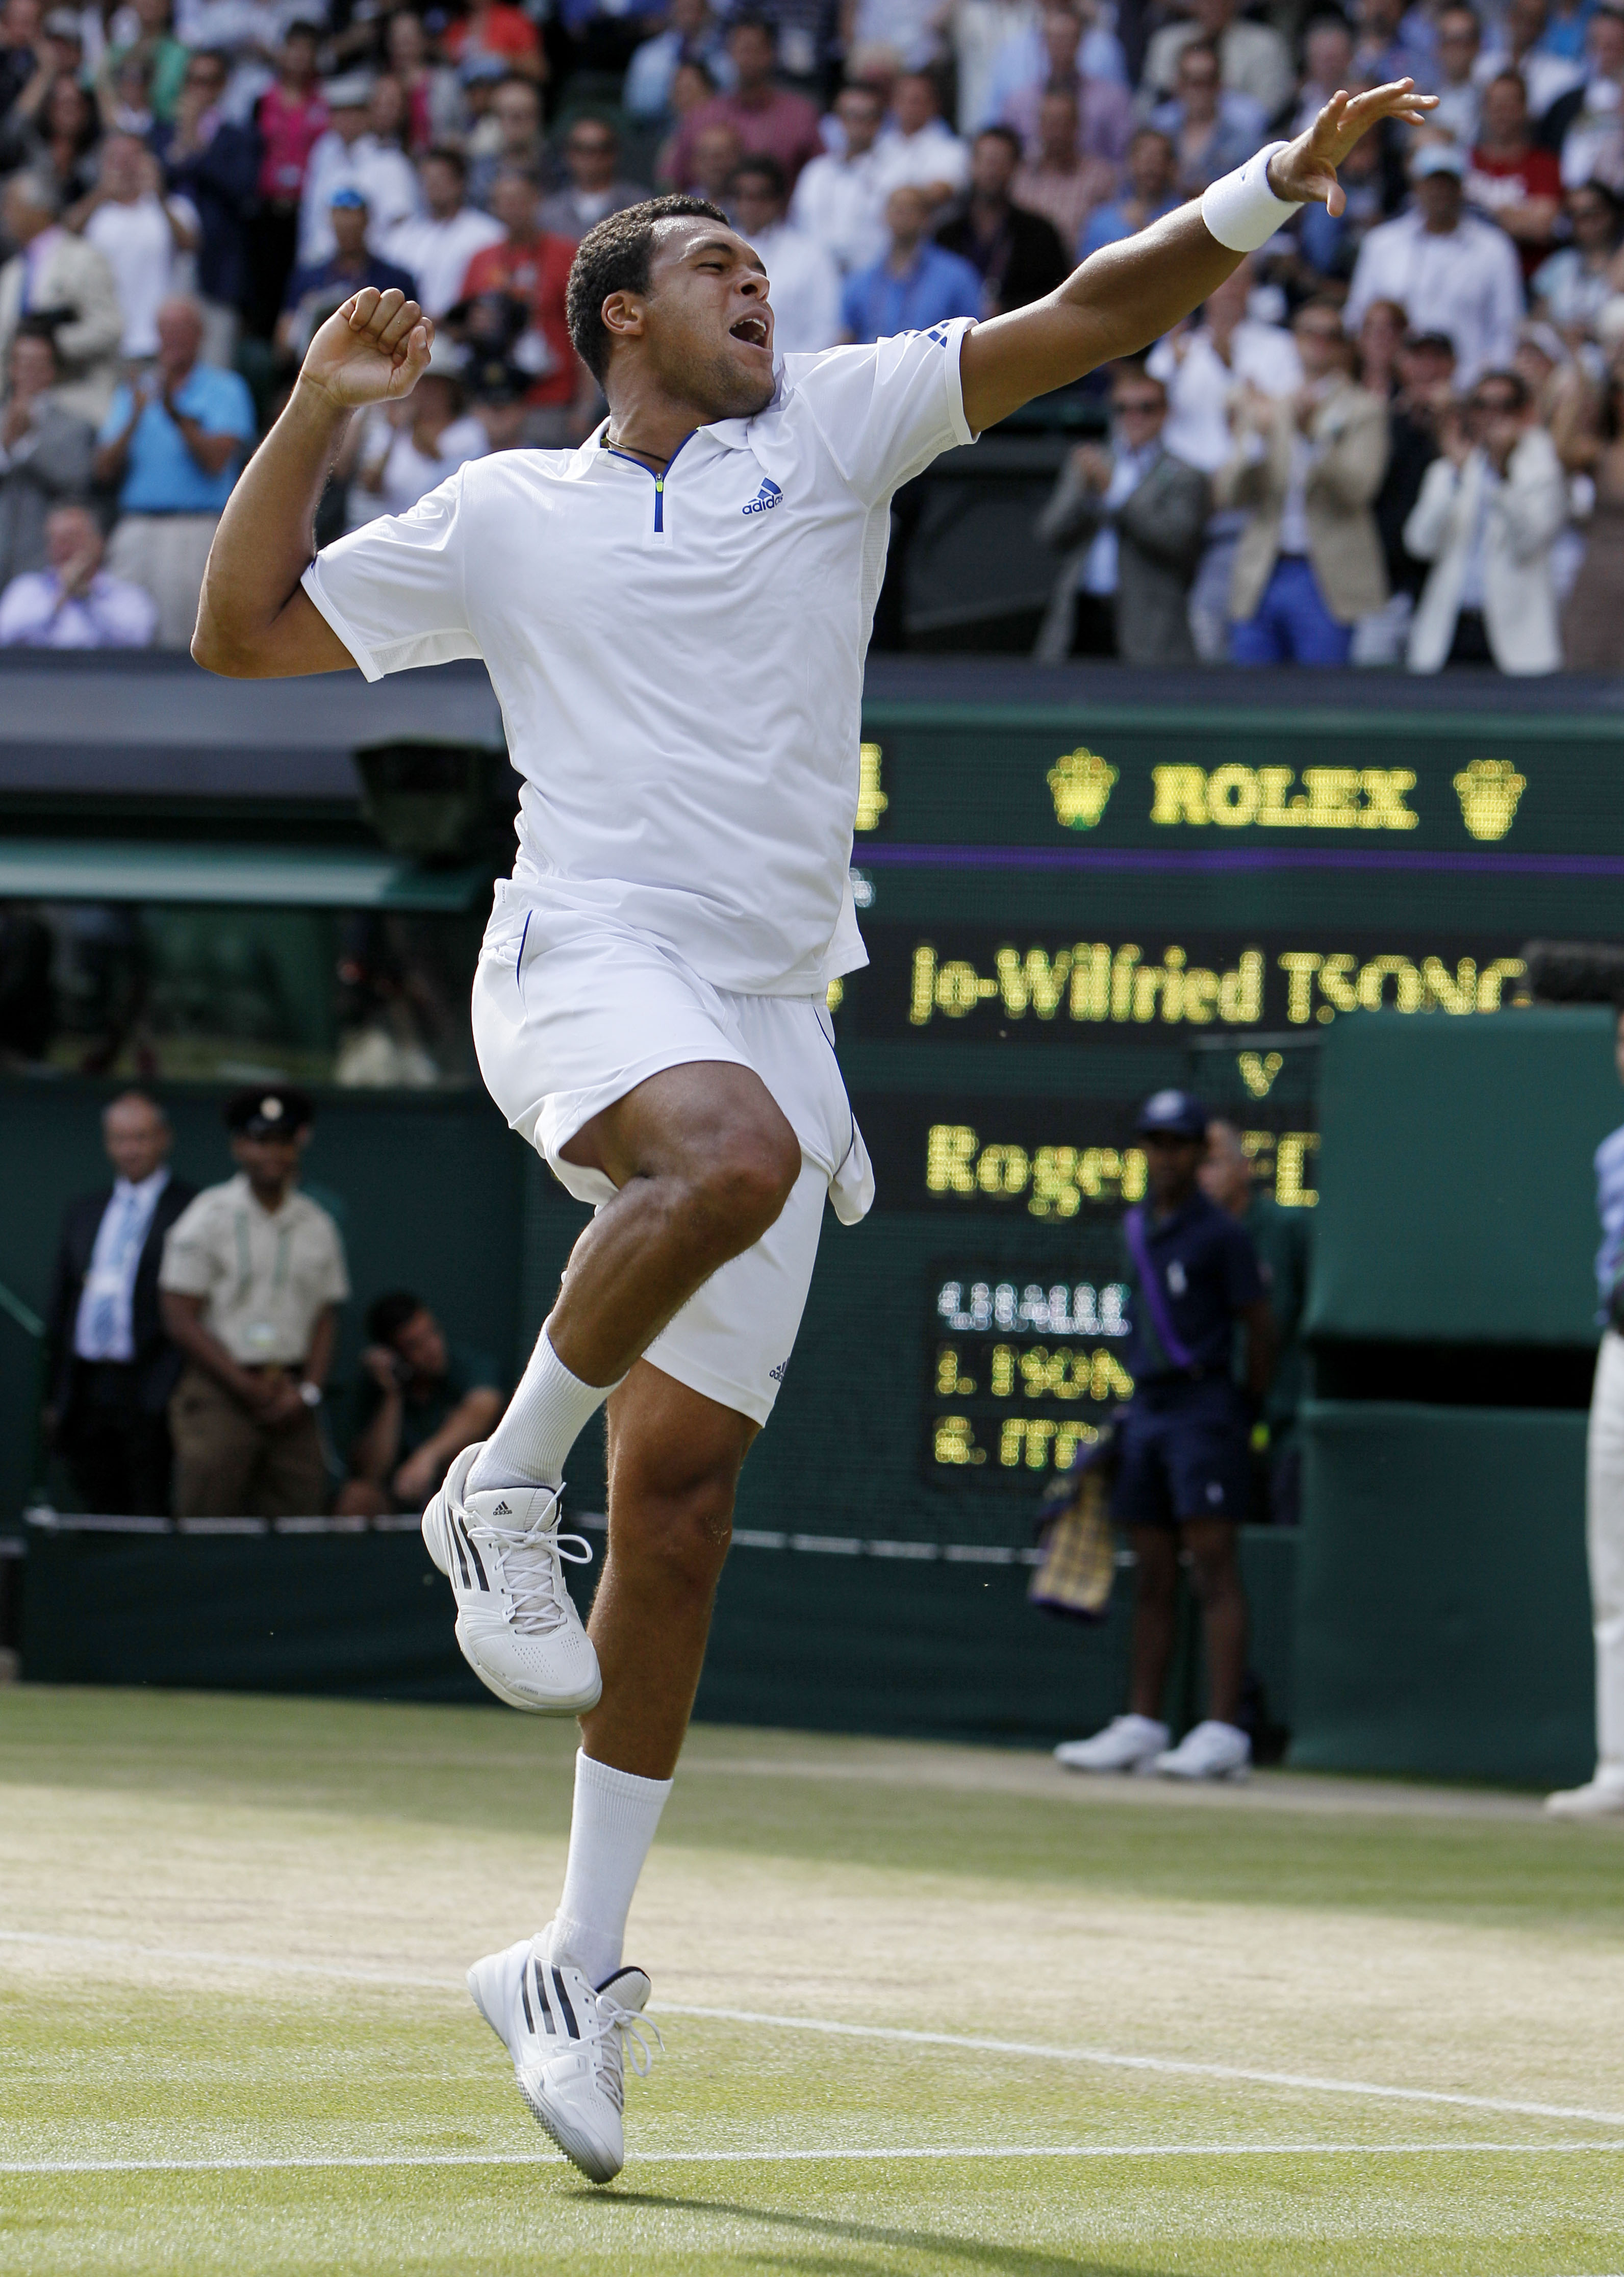 Wimbledon, Novak Djokovic, Rafael Nadal, Björn Borg, Tennis, Tsonga, Roger Federer, Robin Soderling, Federer